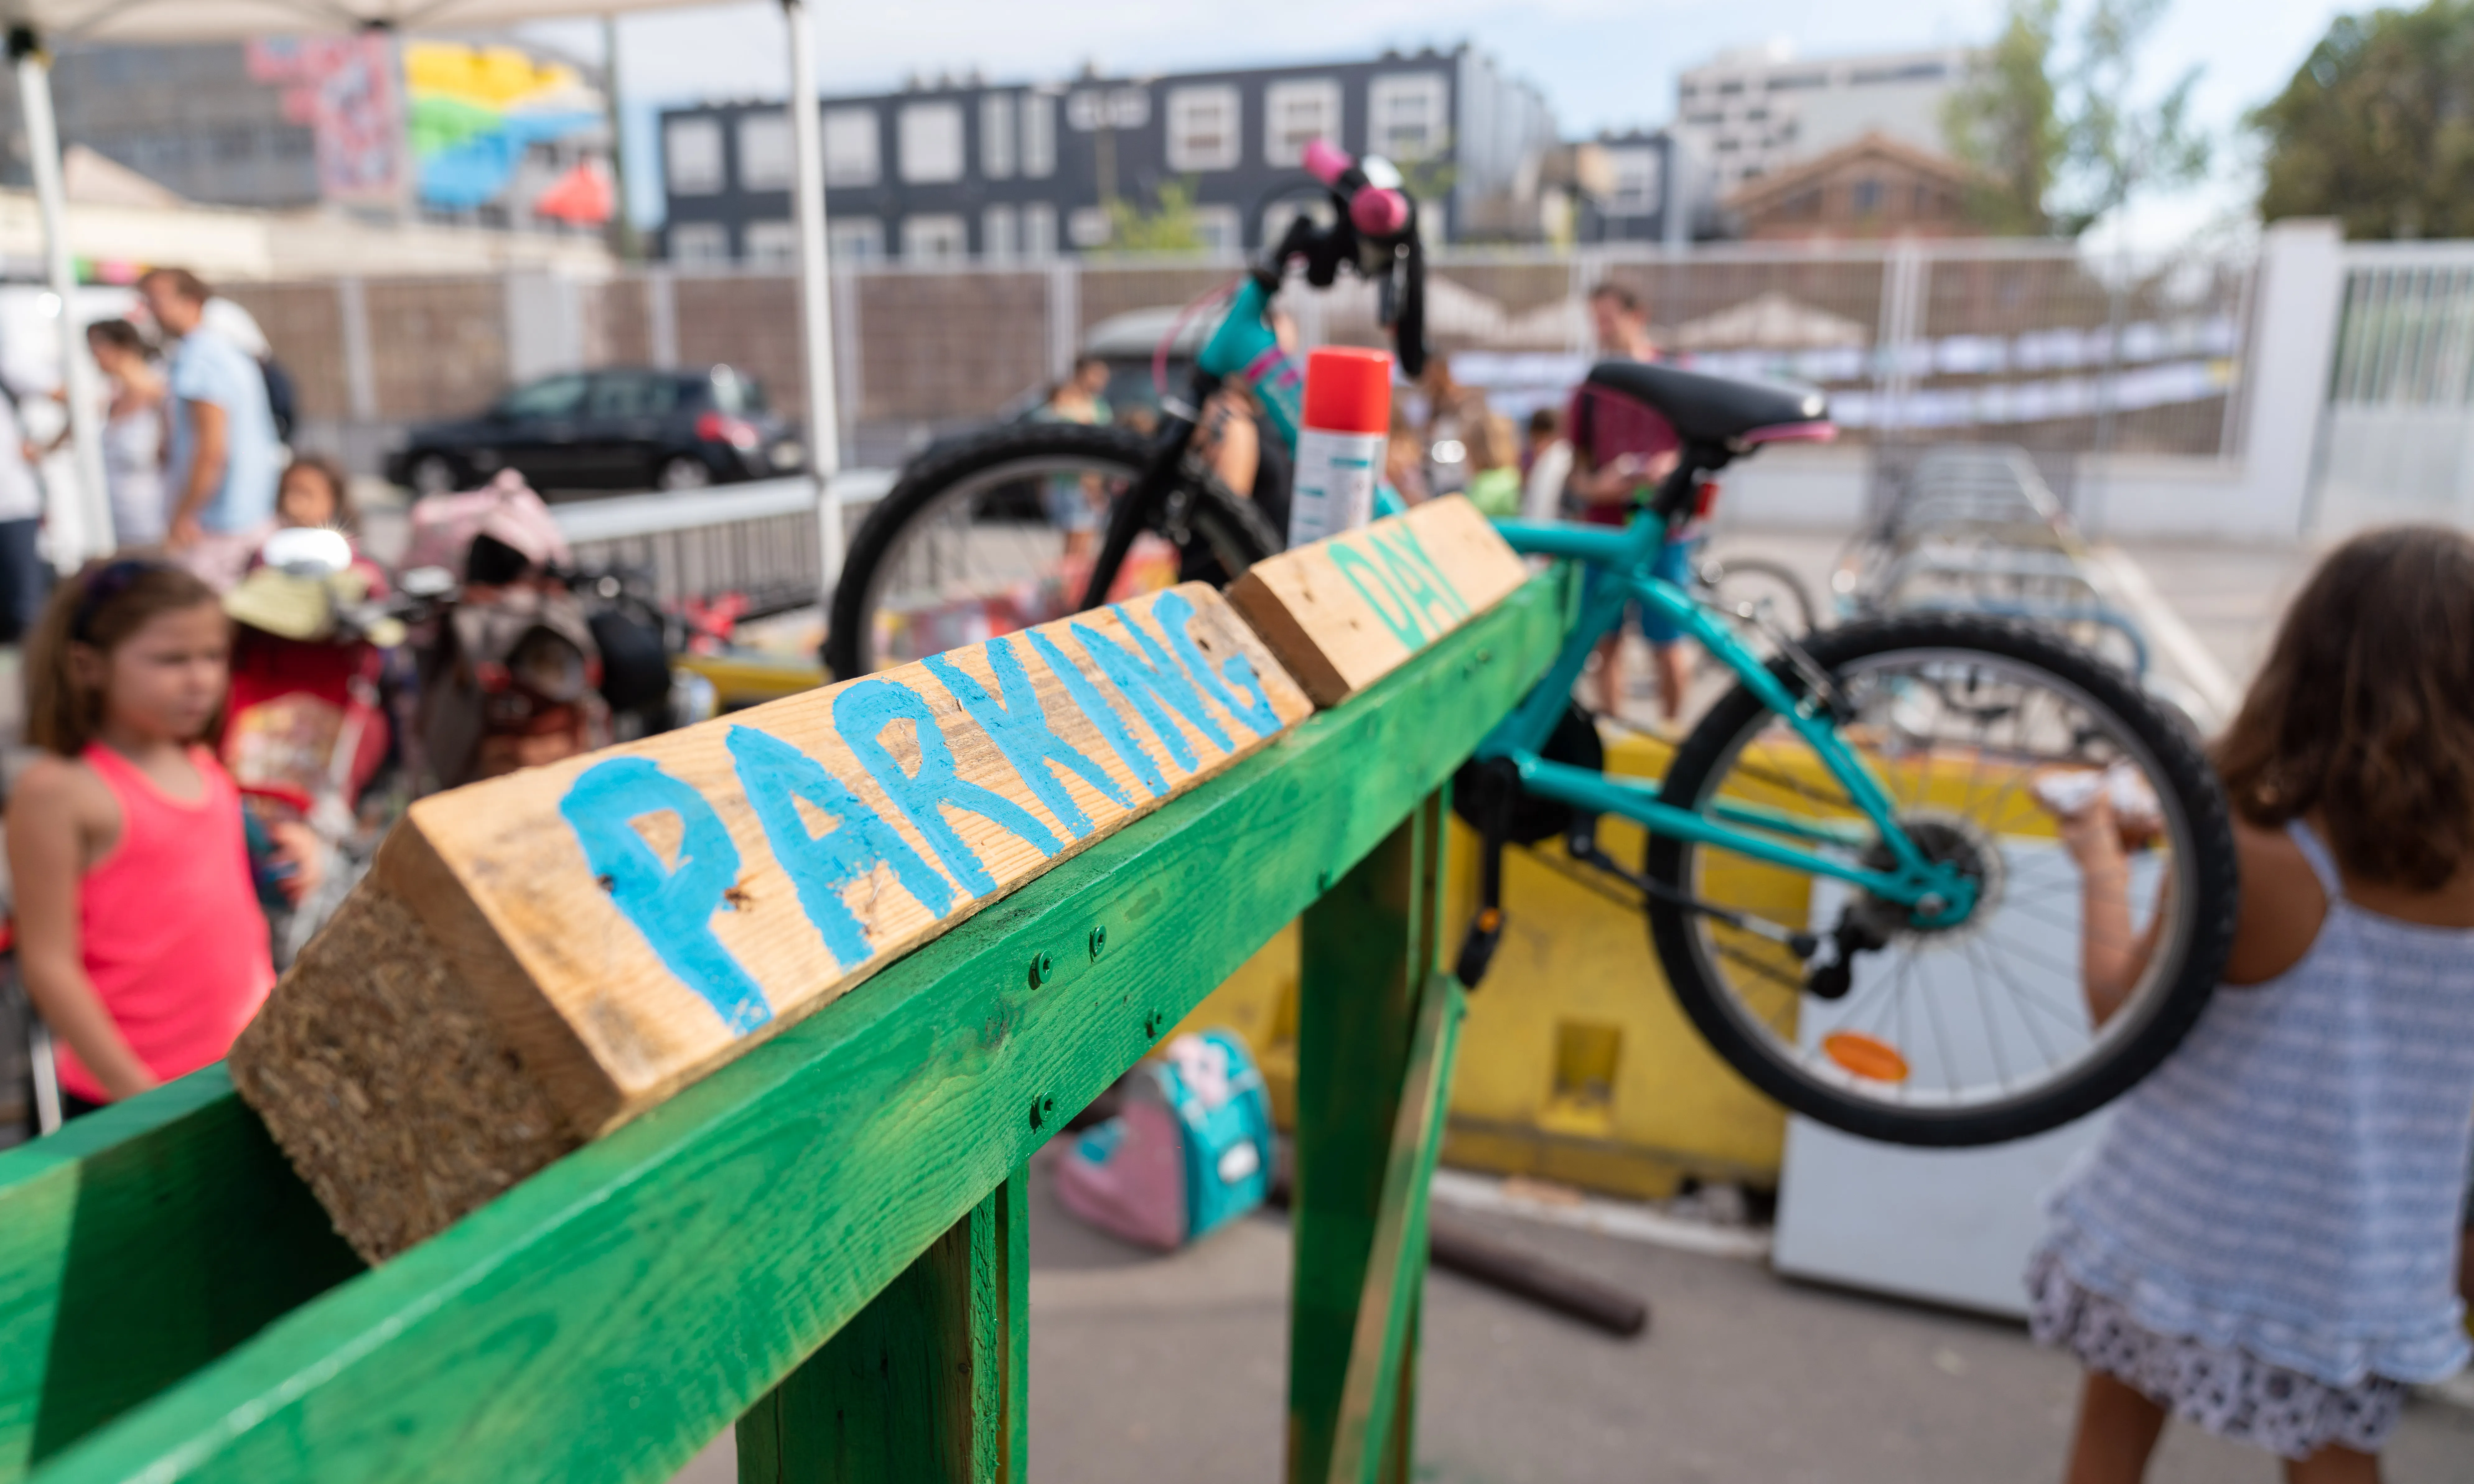 El Park(ing) day defensa la promoció de la mobilitat activa, aquella que comprèn l'ús de la bici, el transport públic o els desplaçaments a peu.